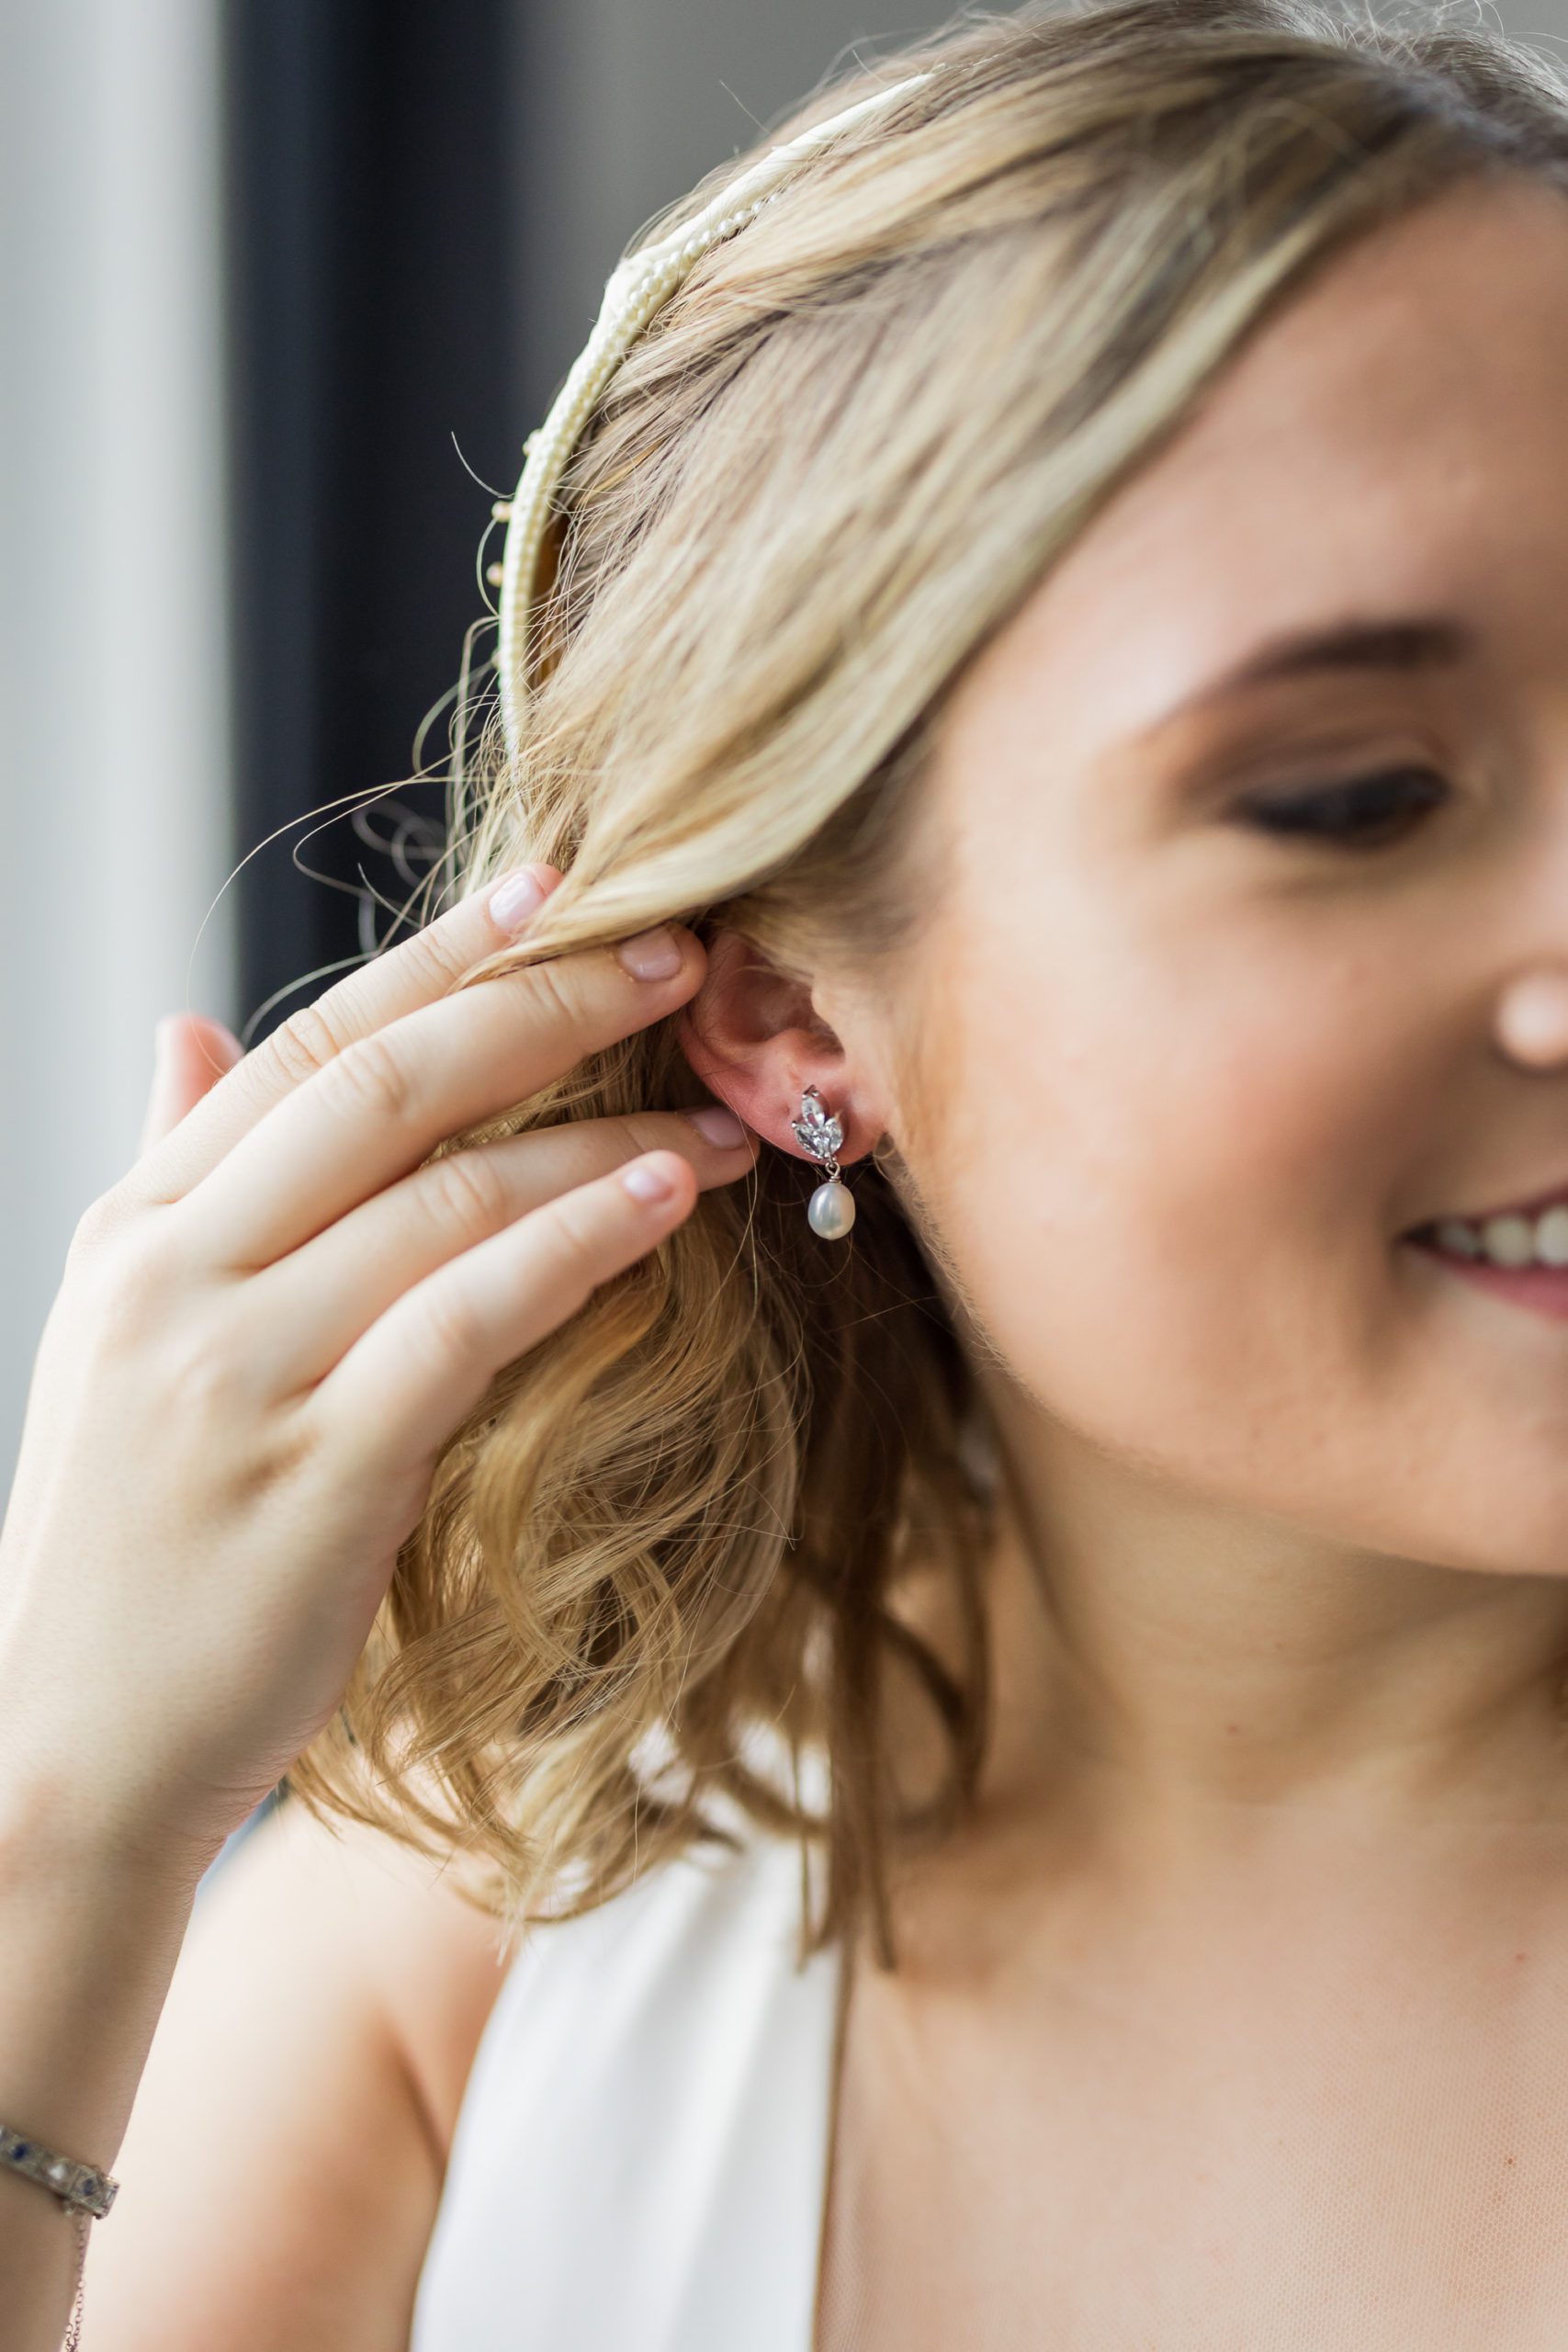 bride brushing hair behind ear showing earrings